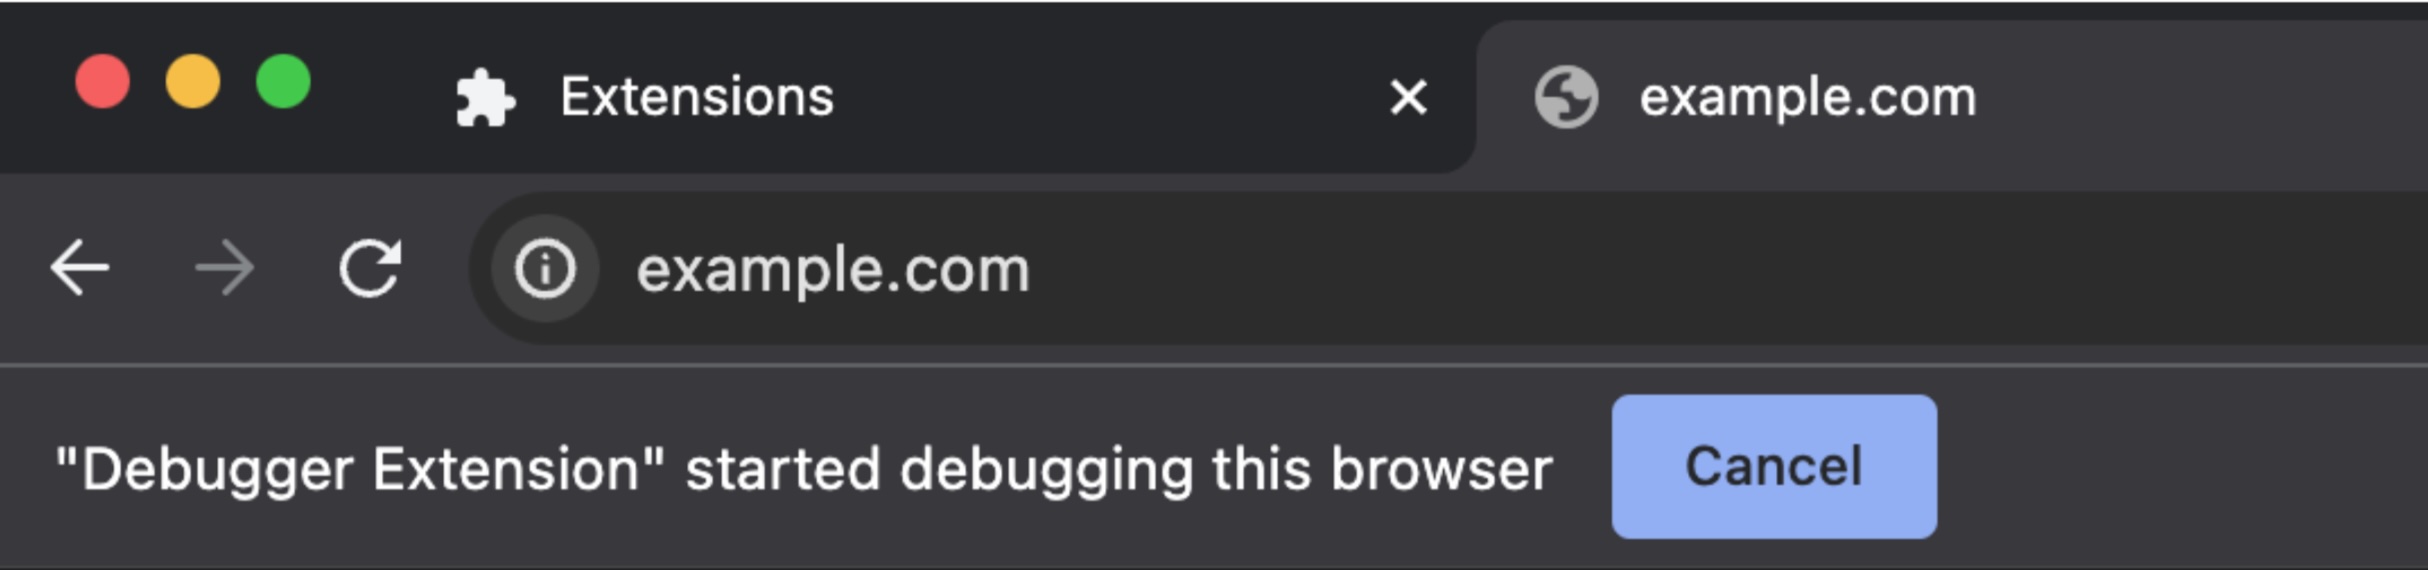 「Debugger 拡張機能がこのブラウザのデバッグを開始しました」というメッセージが表示された Chrome のアドレスバーのスクリーンショット